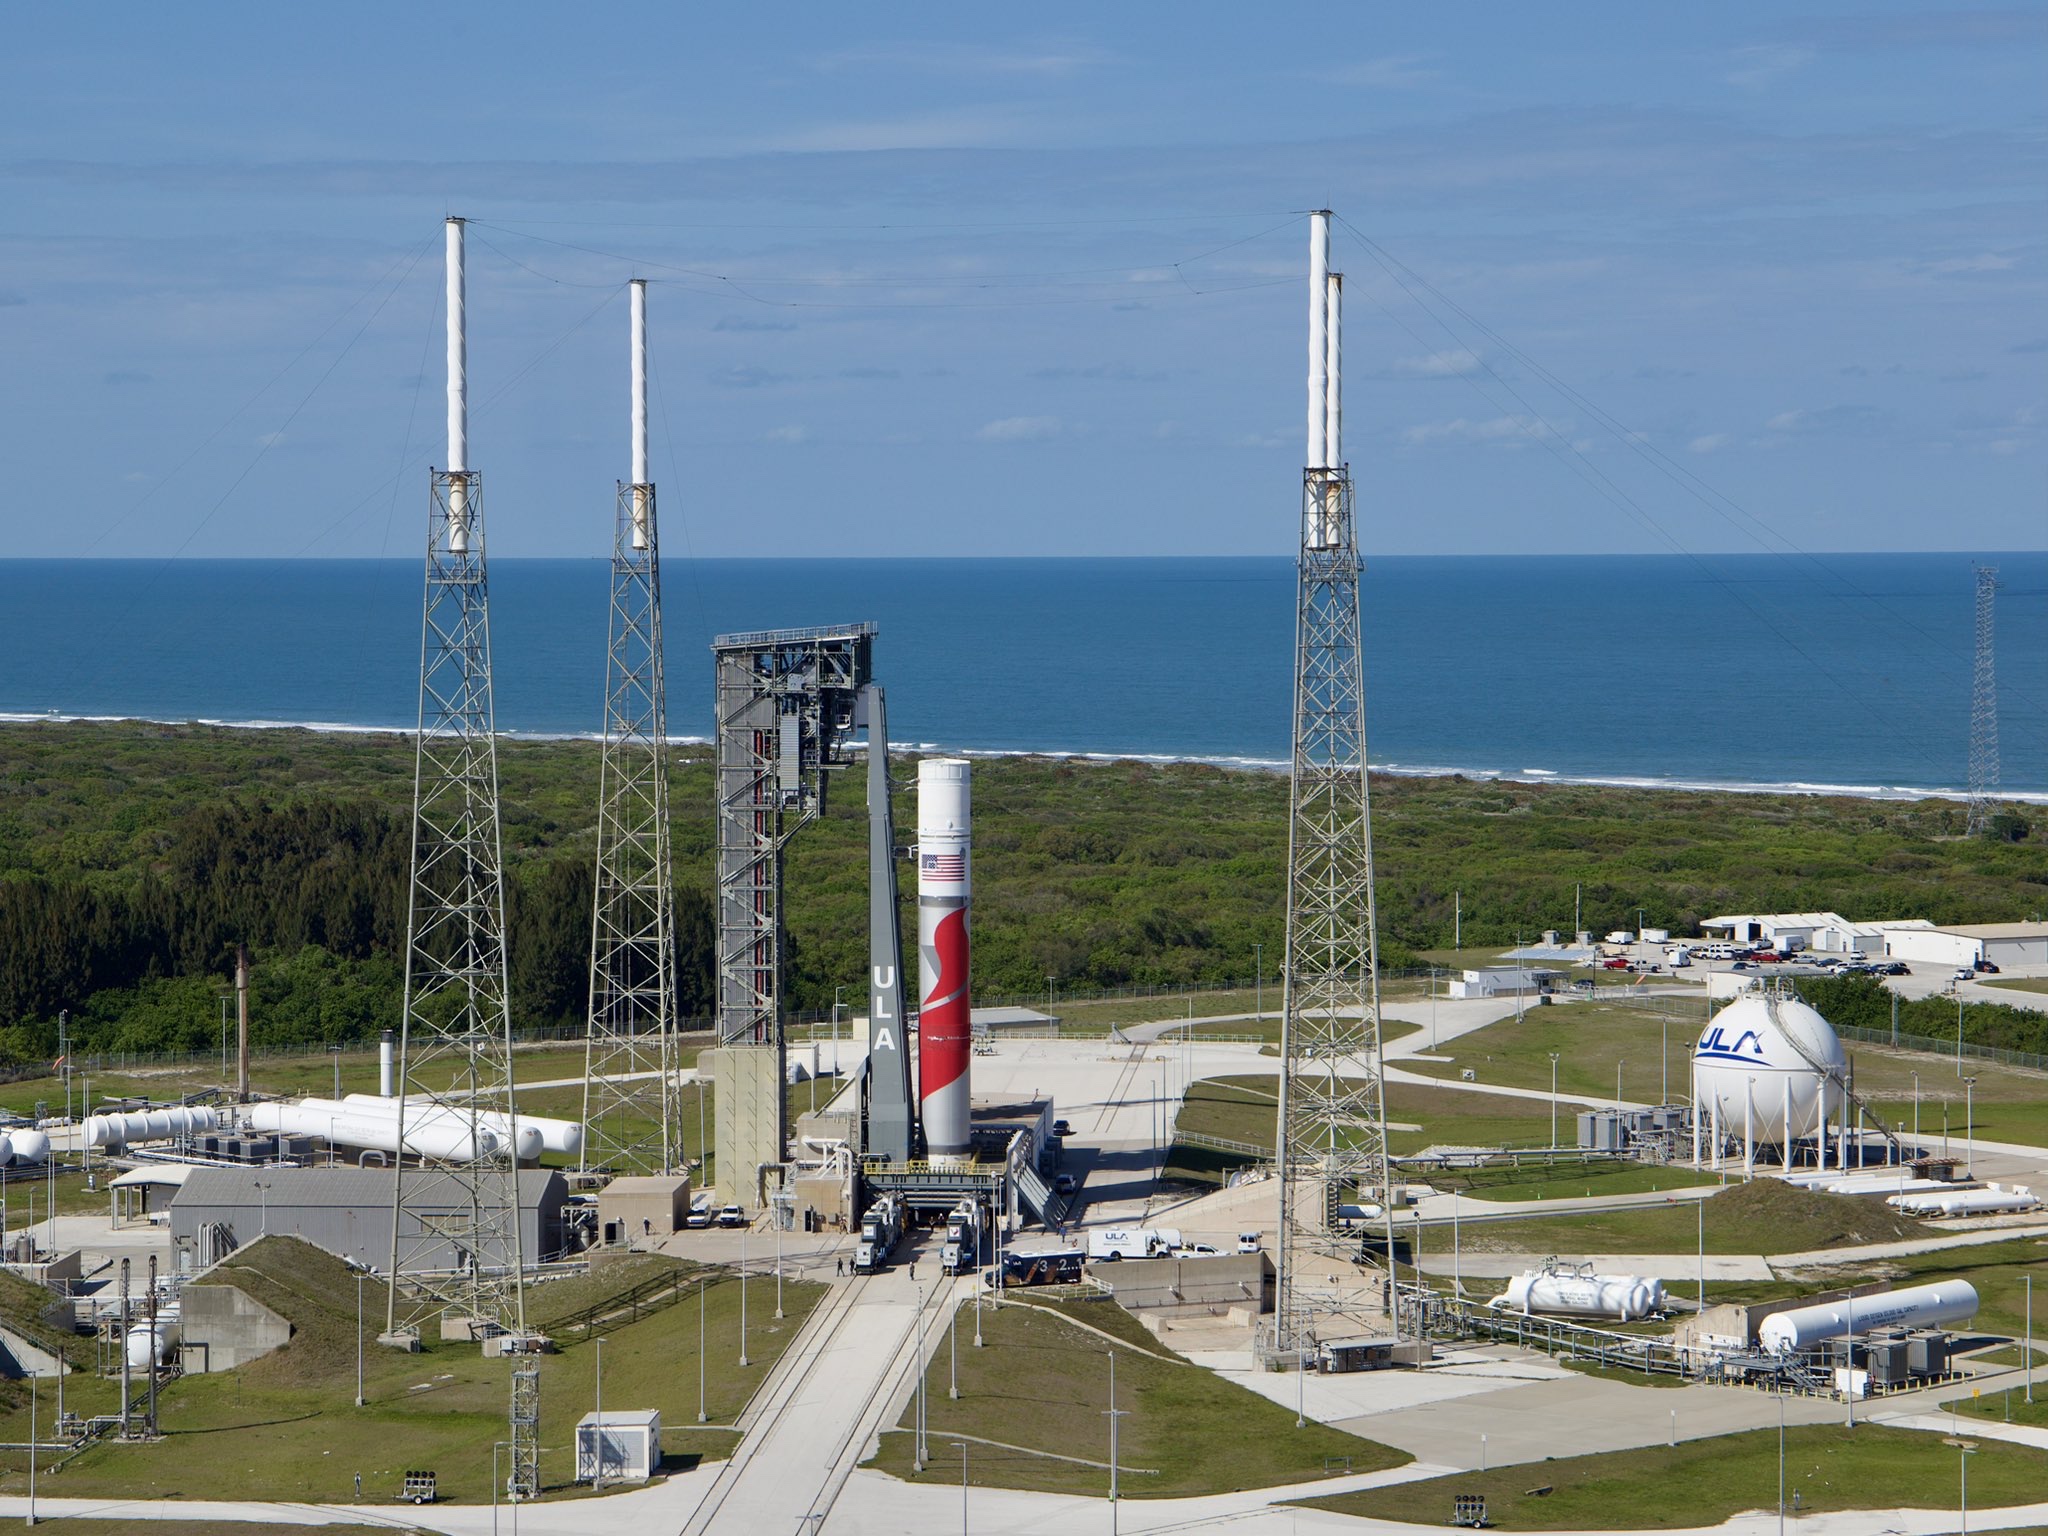 ULA’s new rocket Vulcan starts testing at SLC-41